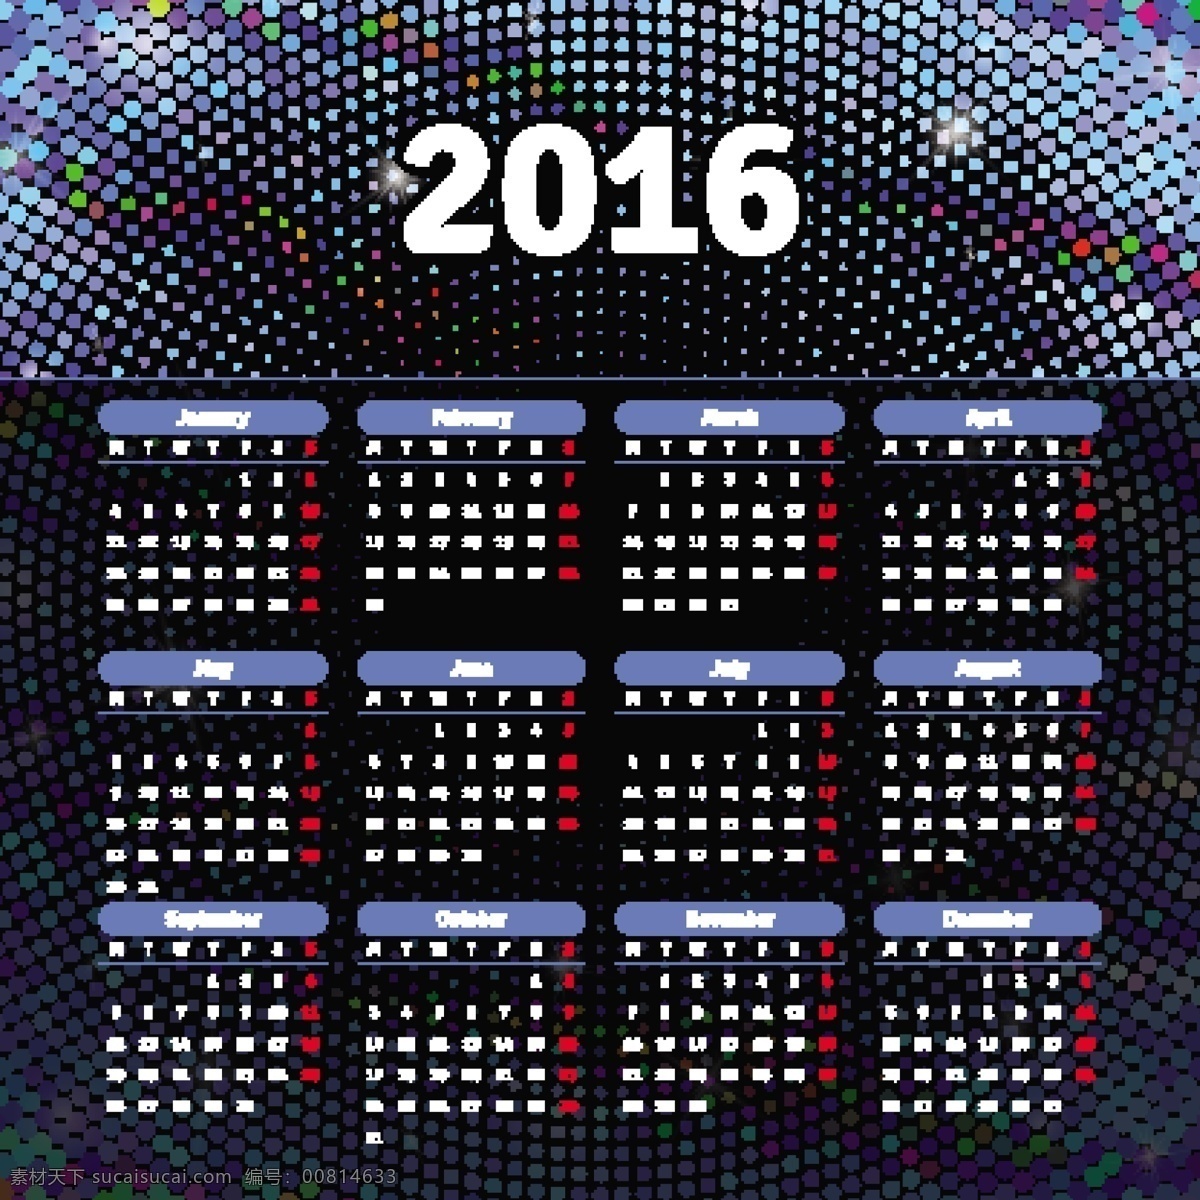 蓝色 光点 2016 年 日历表 2016日历 猴年日历 猴年 日历 挂历 年历 模版 2016台历 月份日历表 日历台历 矢量素材 黑色